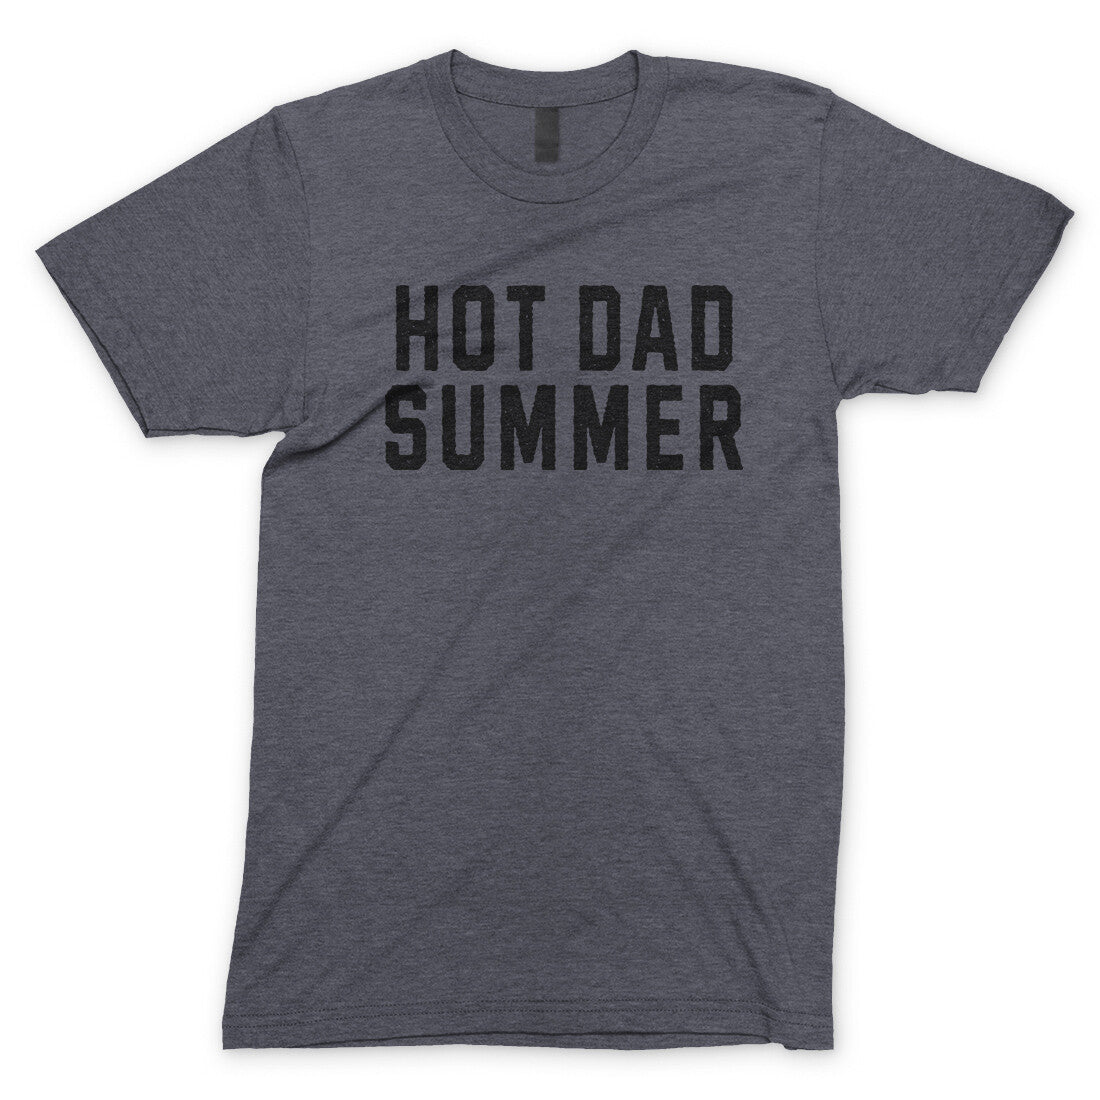 Hot Dad Summer in Dark Heather Color